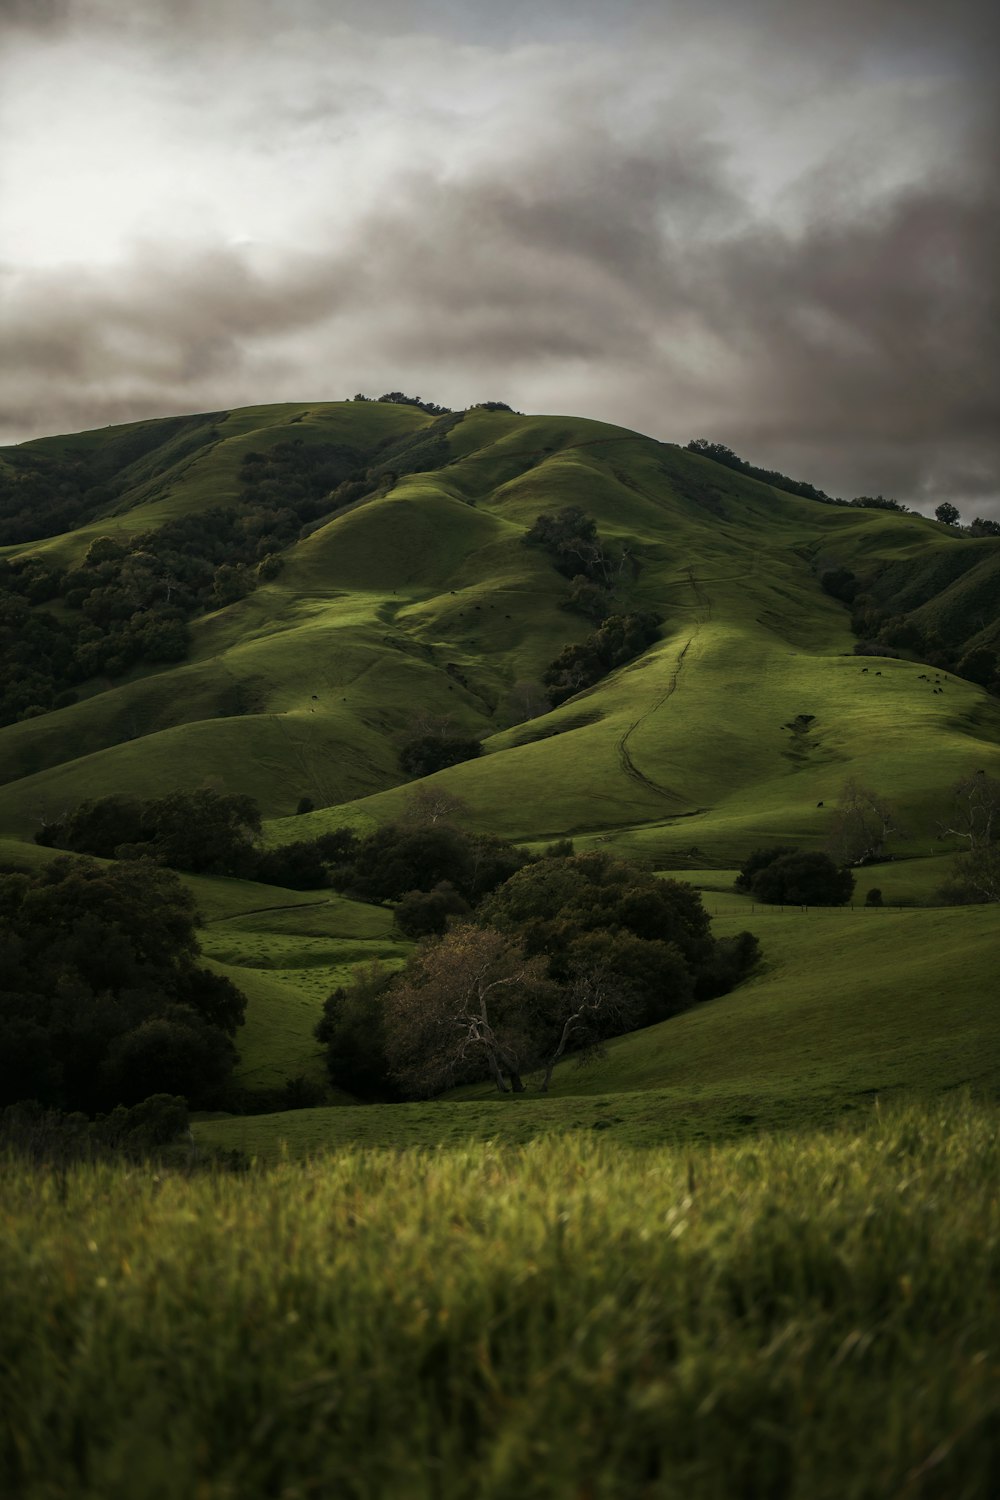 a lush green hillside under a cloudy sky